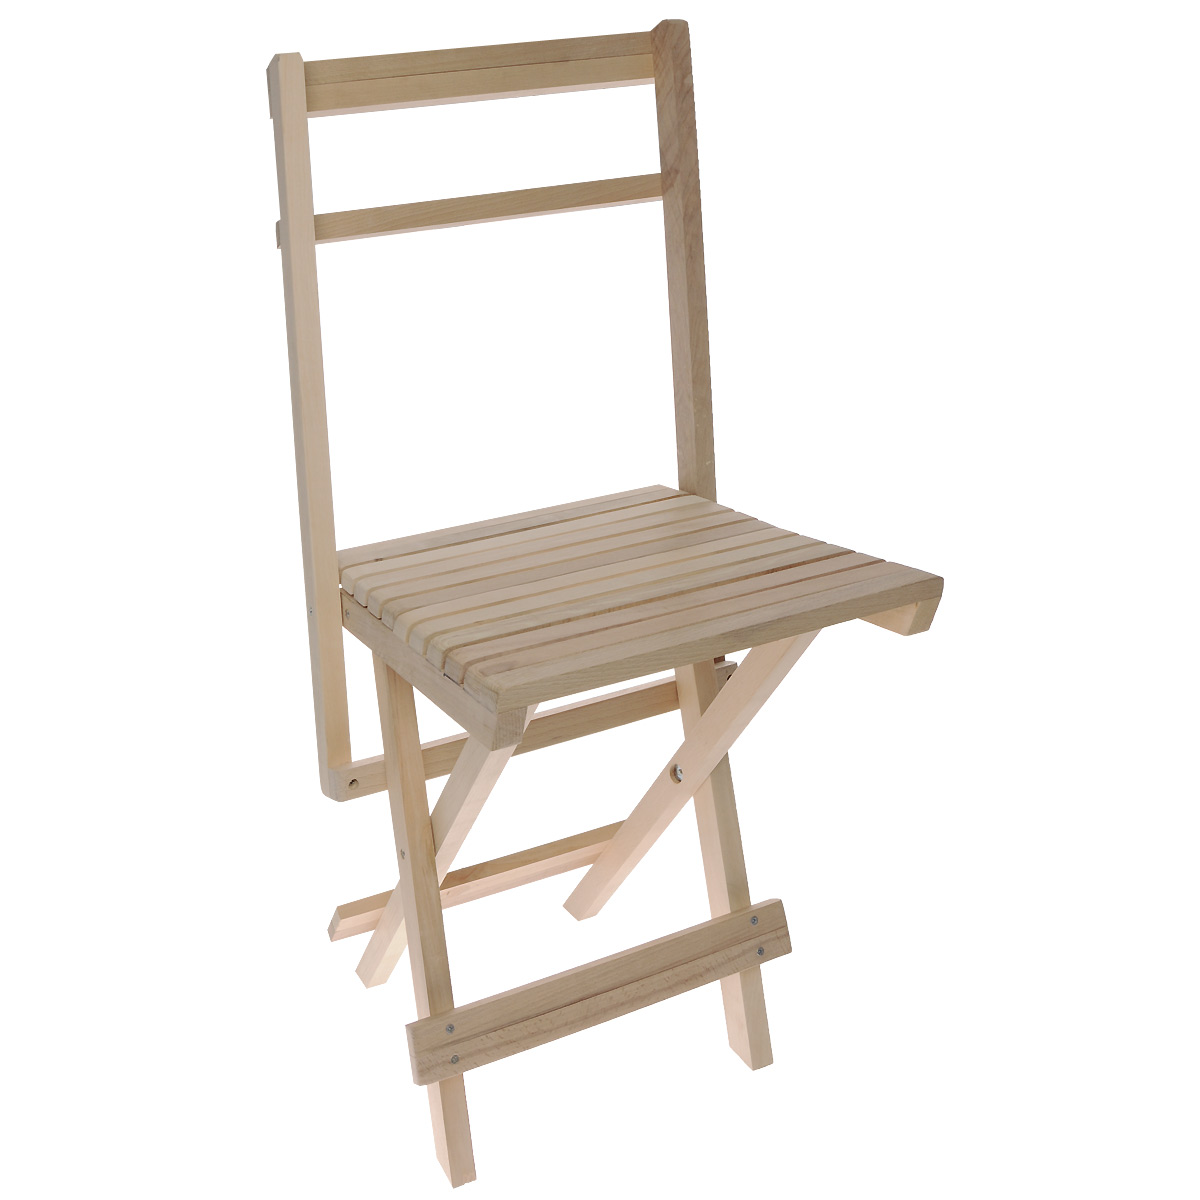 Складной стул "Счастливый дачник" - это незаменимый предмет на даче для приятного времяпрепровождения. Стул выполнен из дерева (ольха), легко складывается и компактен при хранении. Такой стул прекрасно подойдет для комфортного отдыха на даче. В разобранном виде: 56 х 44,5 х 92 см. В собранном виде: 72 х 44,5 х 6 см.